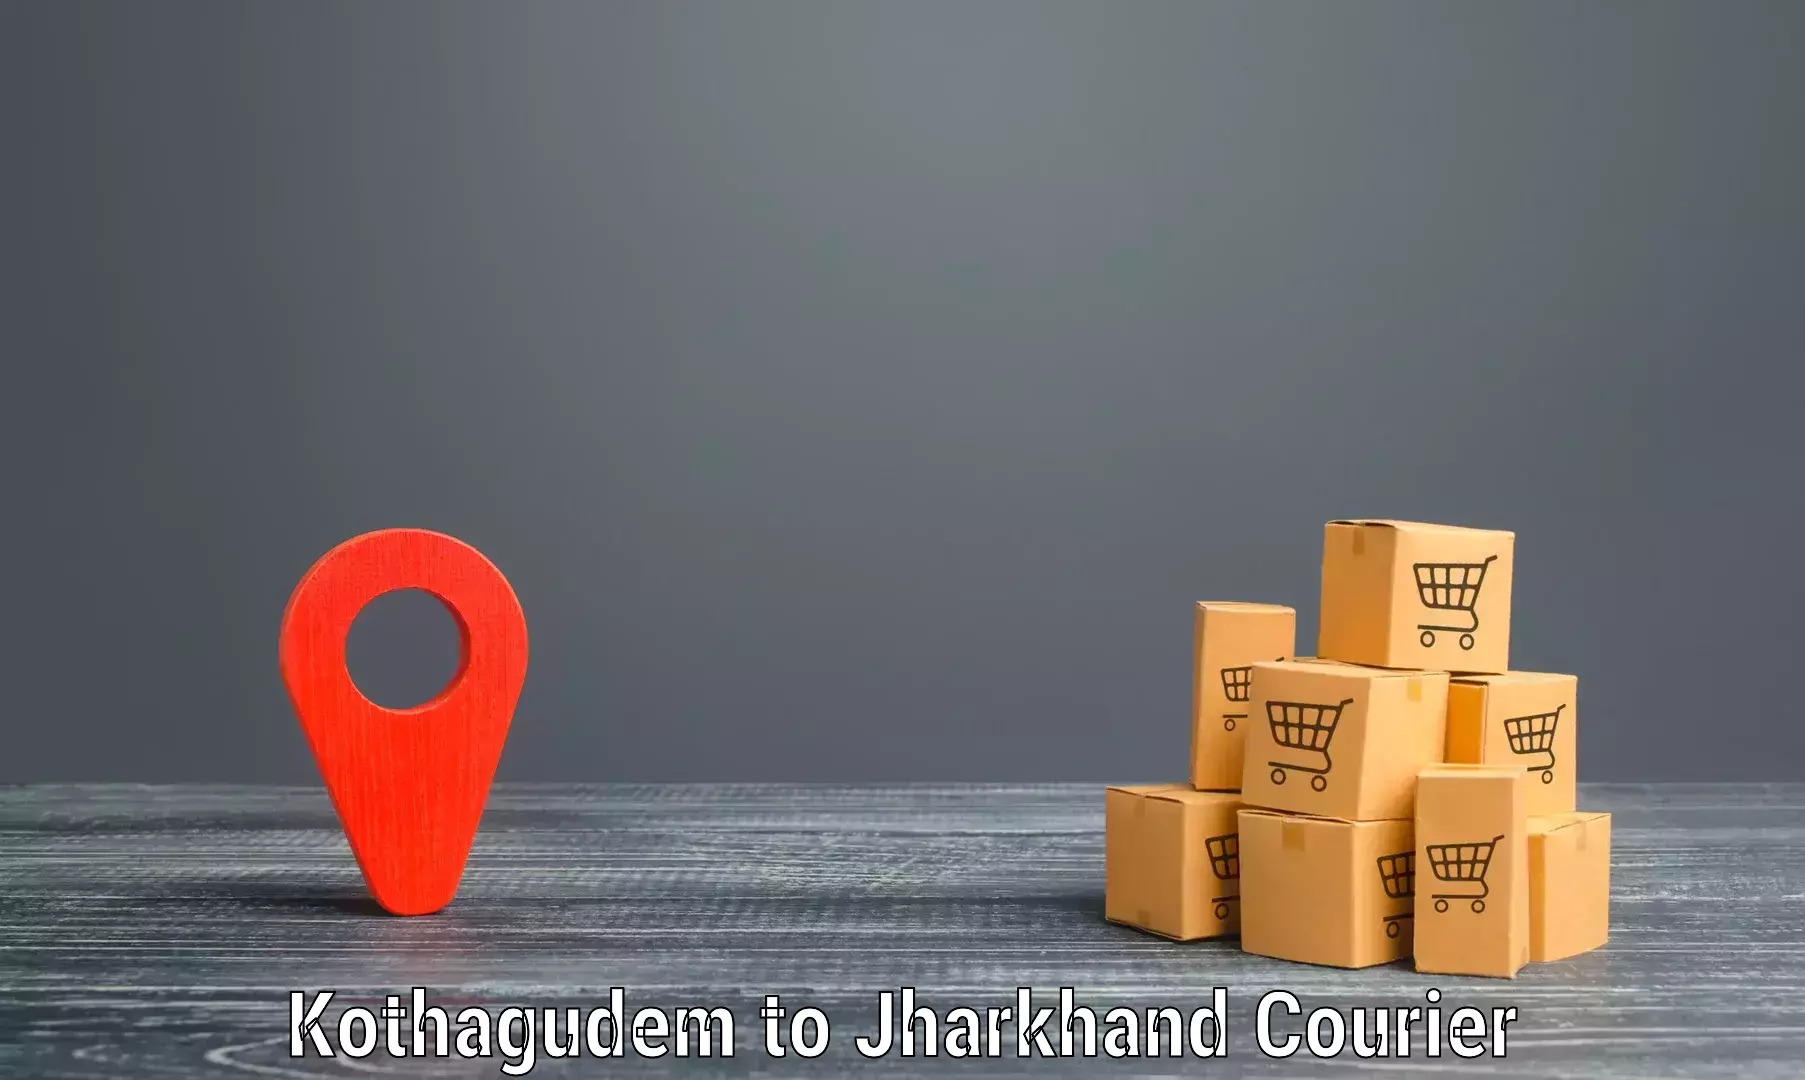 Global parcel delivery Kothagudem to Chandankiyari